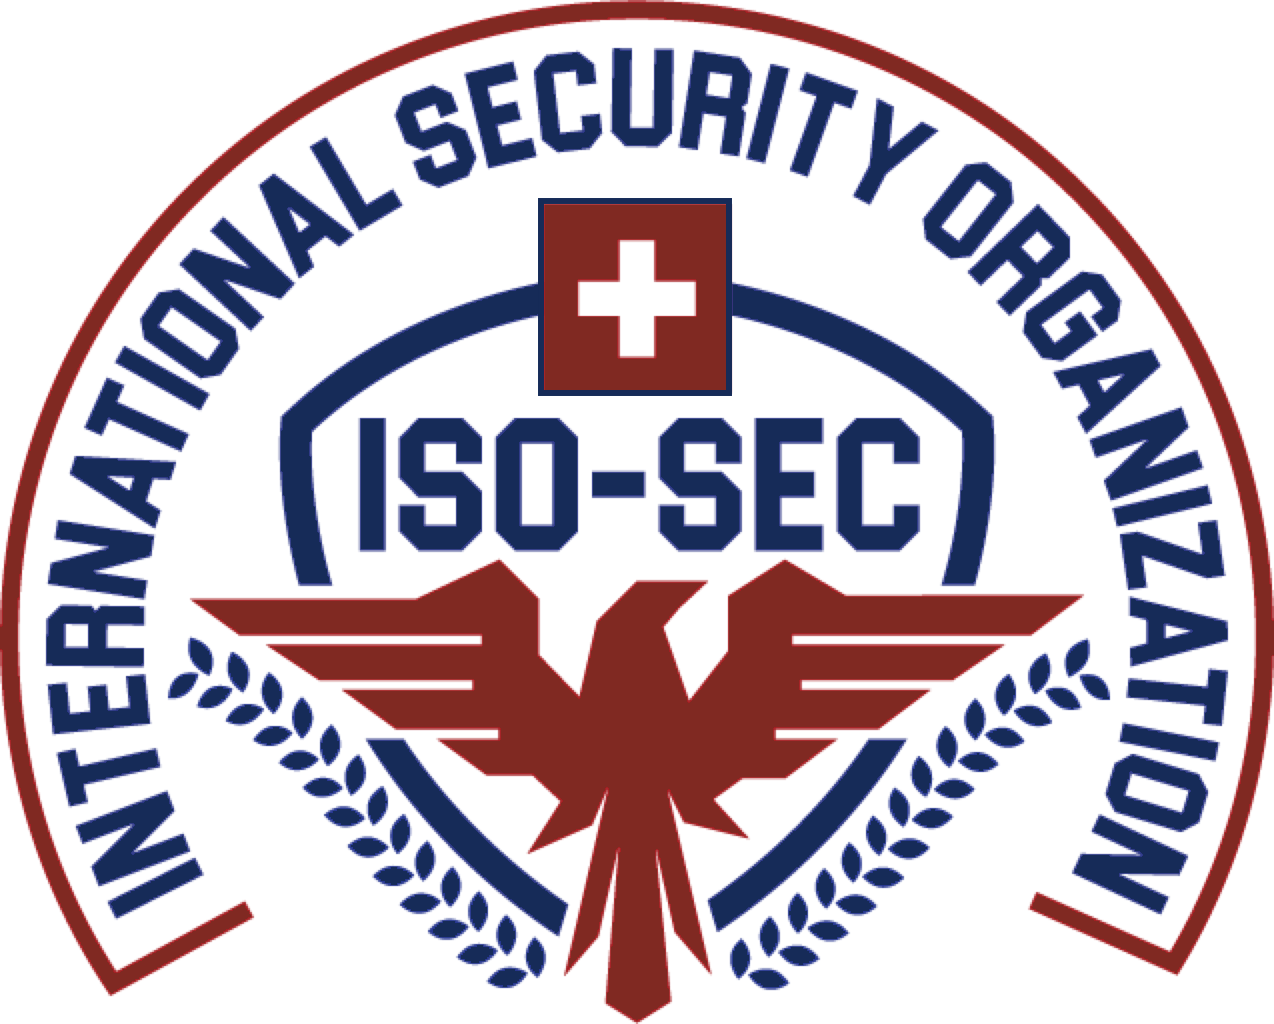 ISO-SEC Group, Switzerland